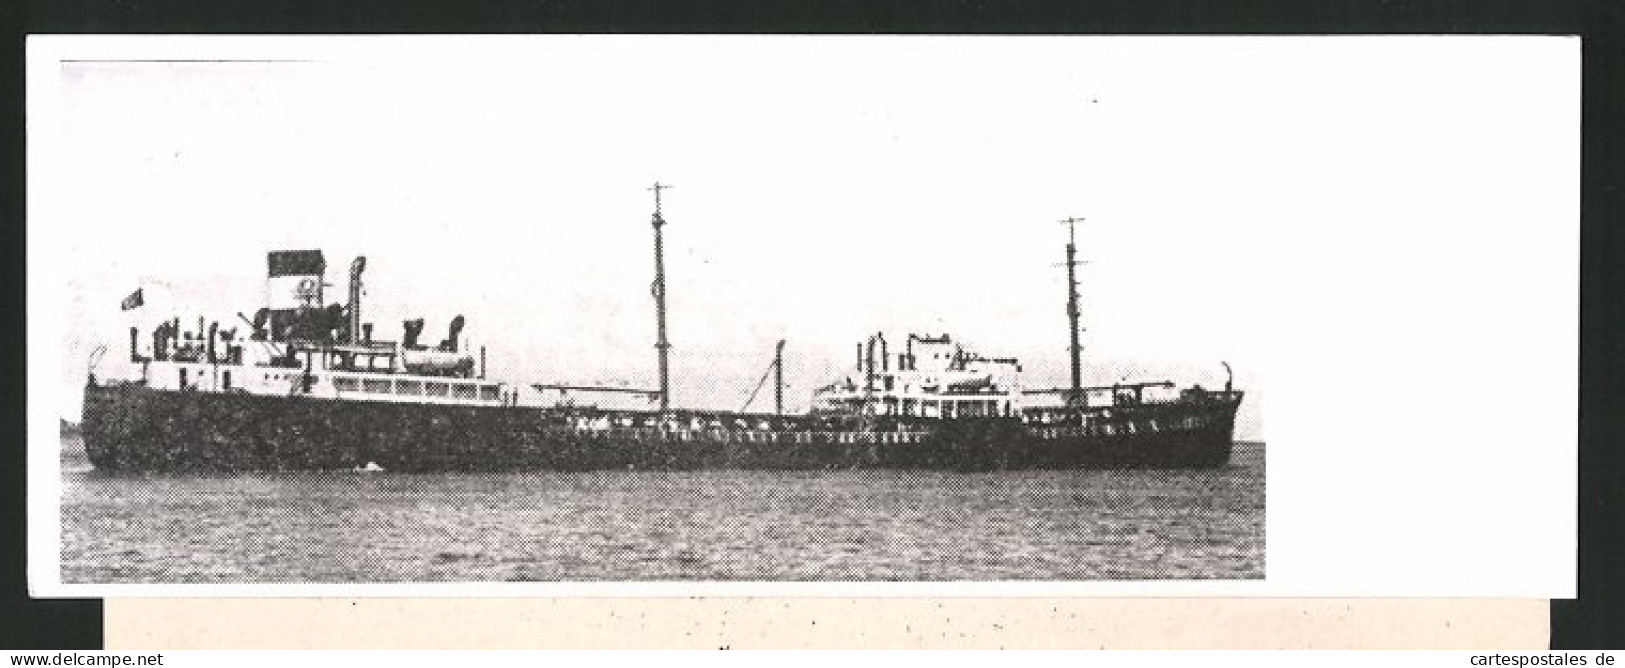 Fotografie Britischer Tankdampfer Charles F. Meyer  - Schiffe